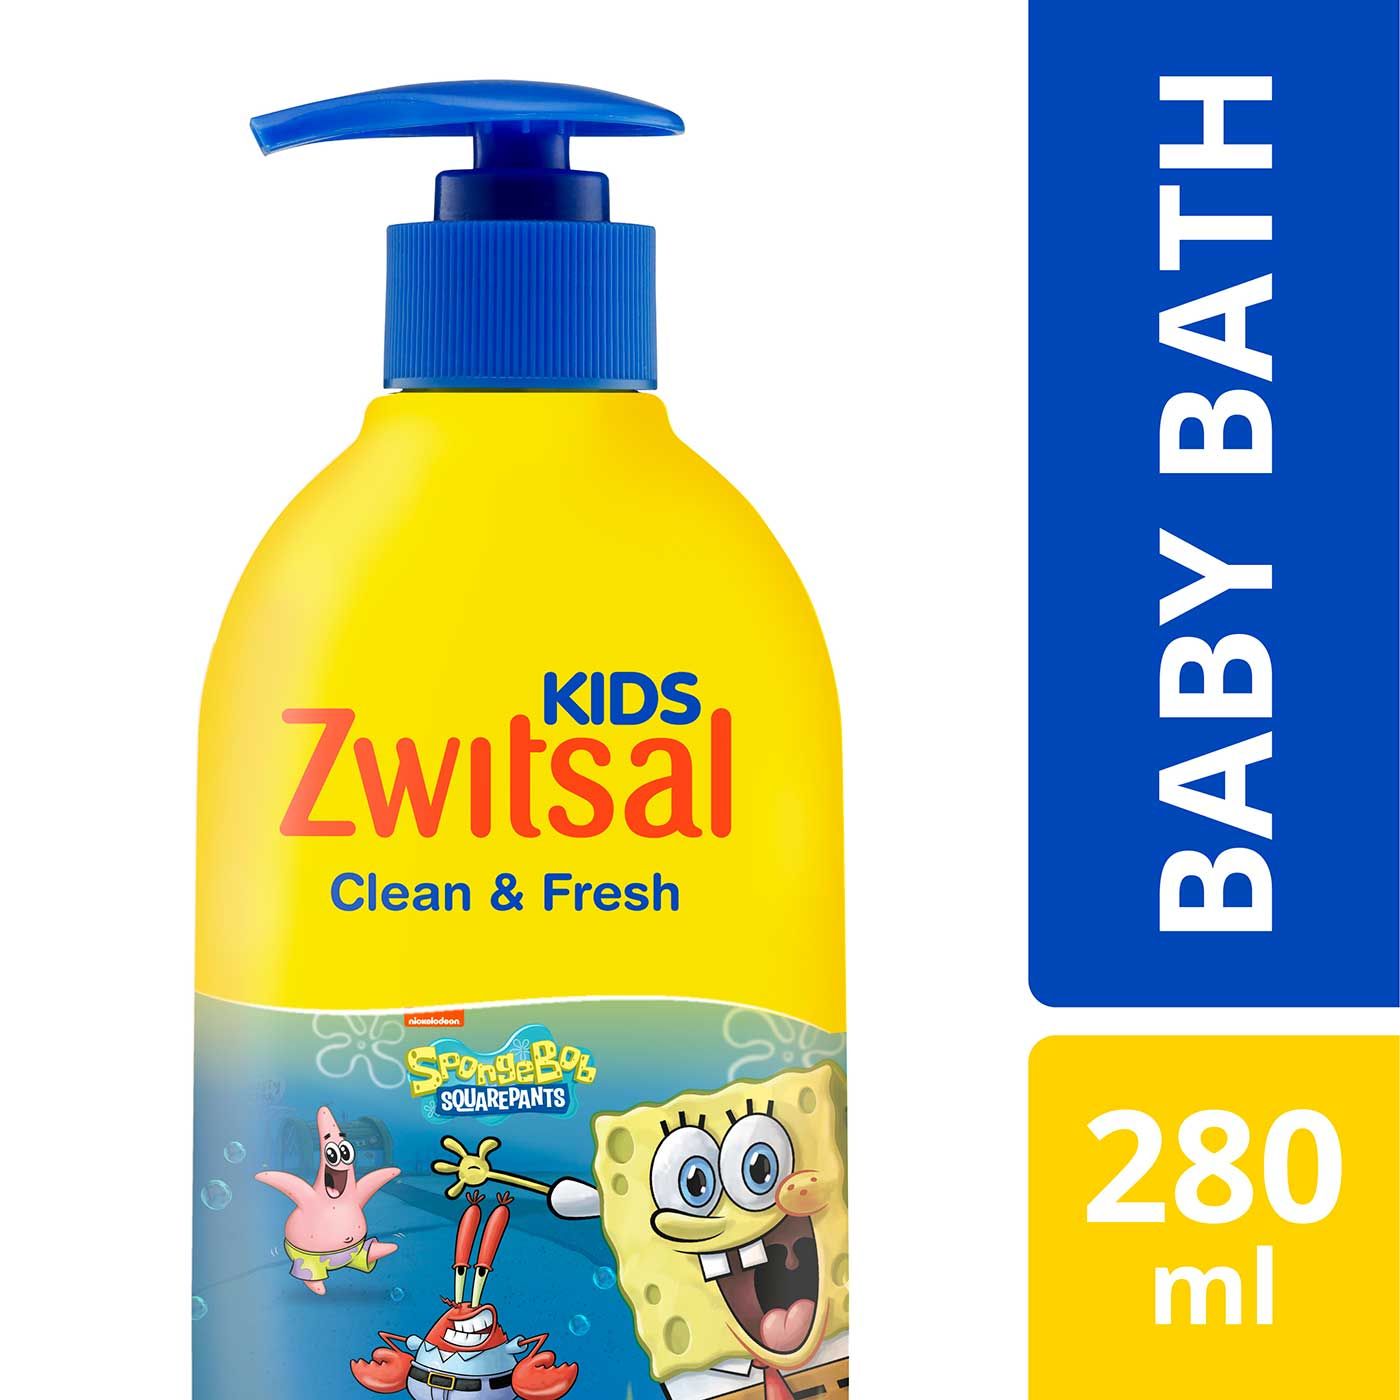 Zwitsal Kids Bubble Bath Blue Clean & Fresh 280ml - 1